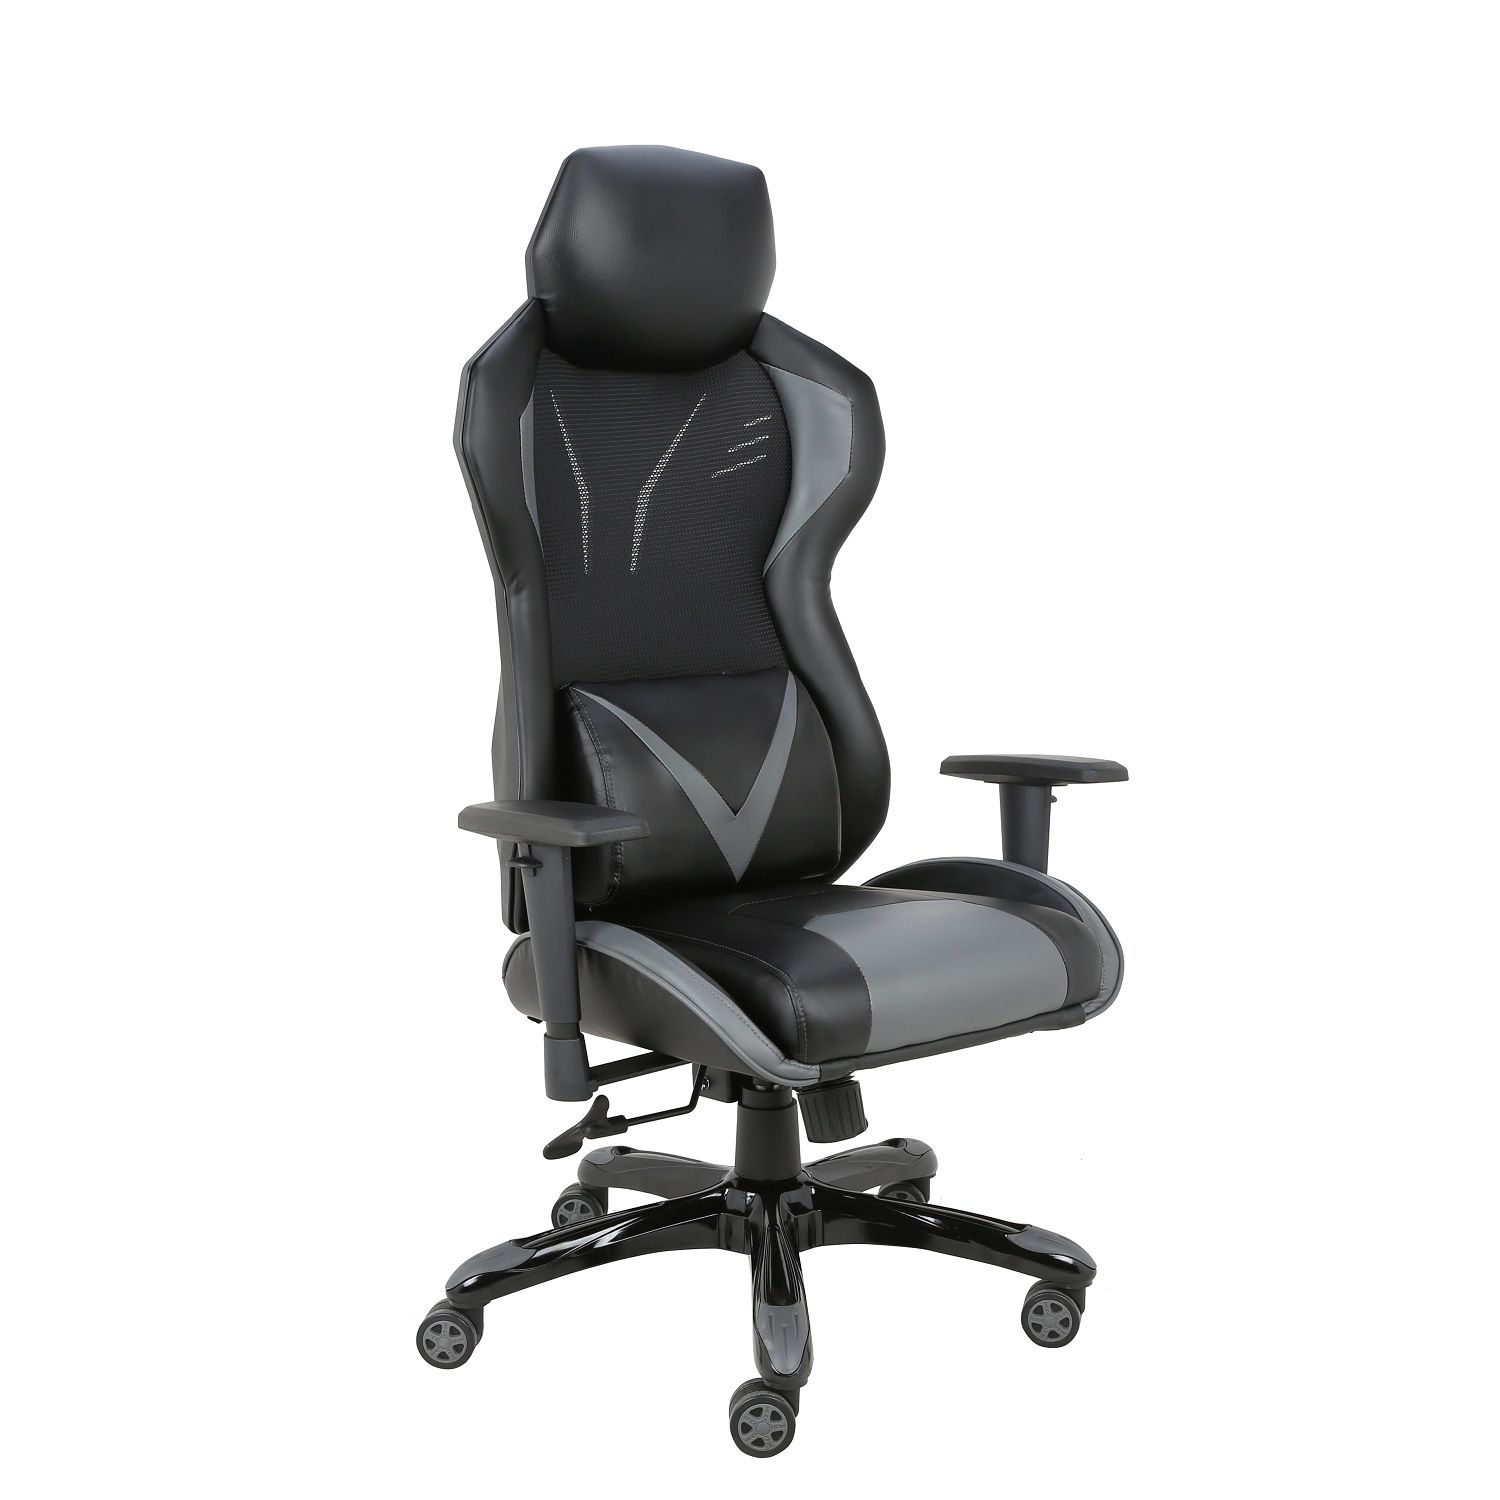 Cadeira Gamer Giratória Regulável Reclinável + Braço com ajuste de altura + Sistema Relax Cinza Victory - at.home